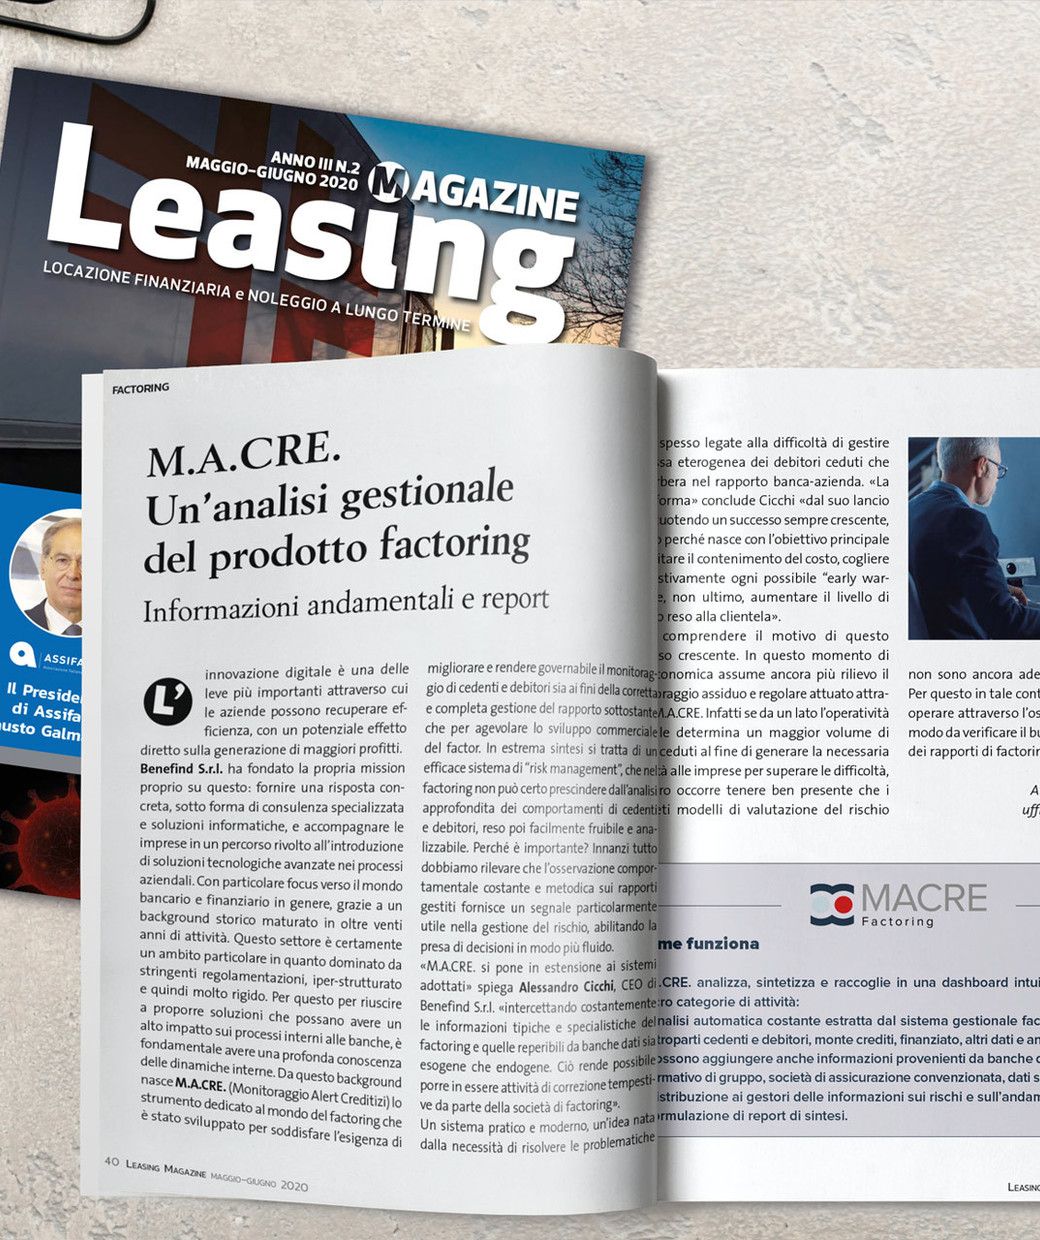 Periodico Leasing Magazine - Locazione finanziaria e noleggio lungo termine